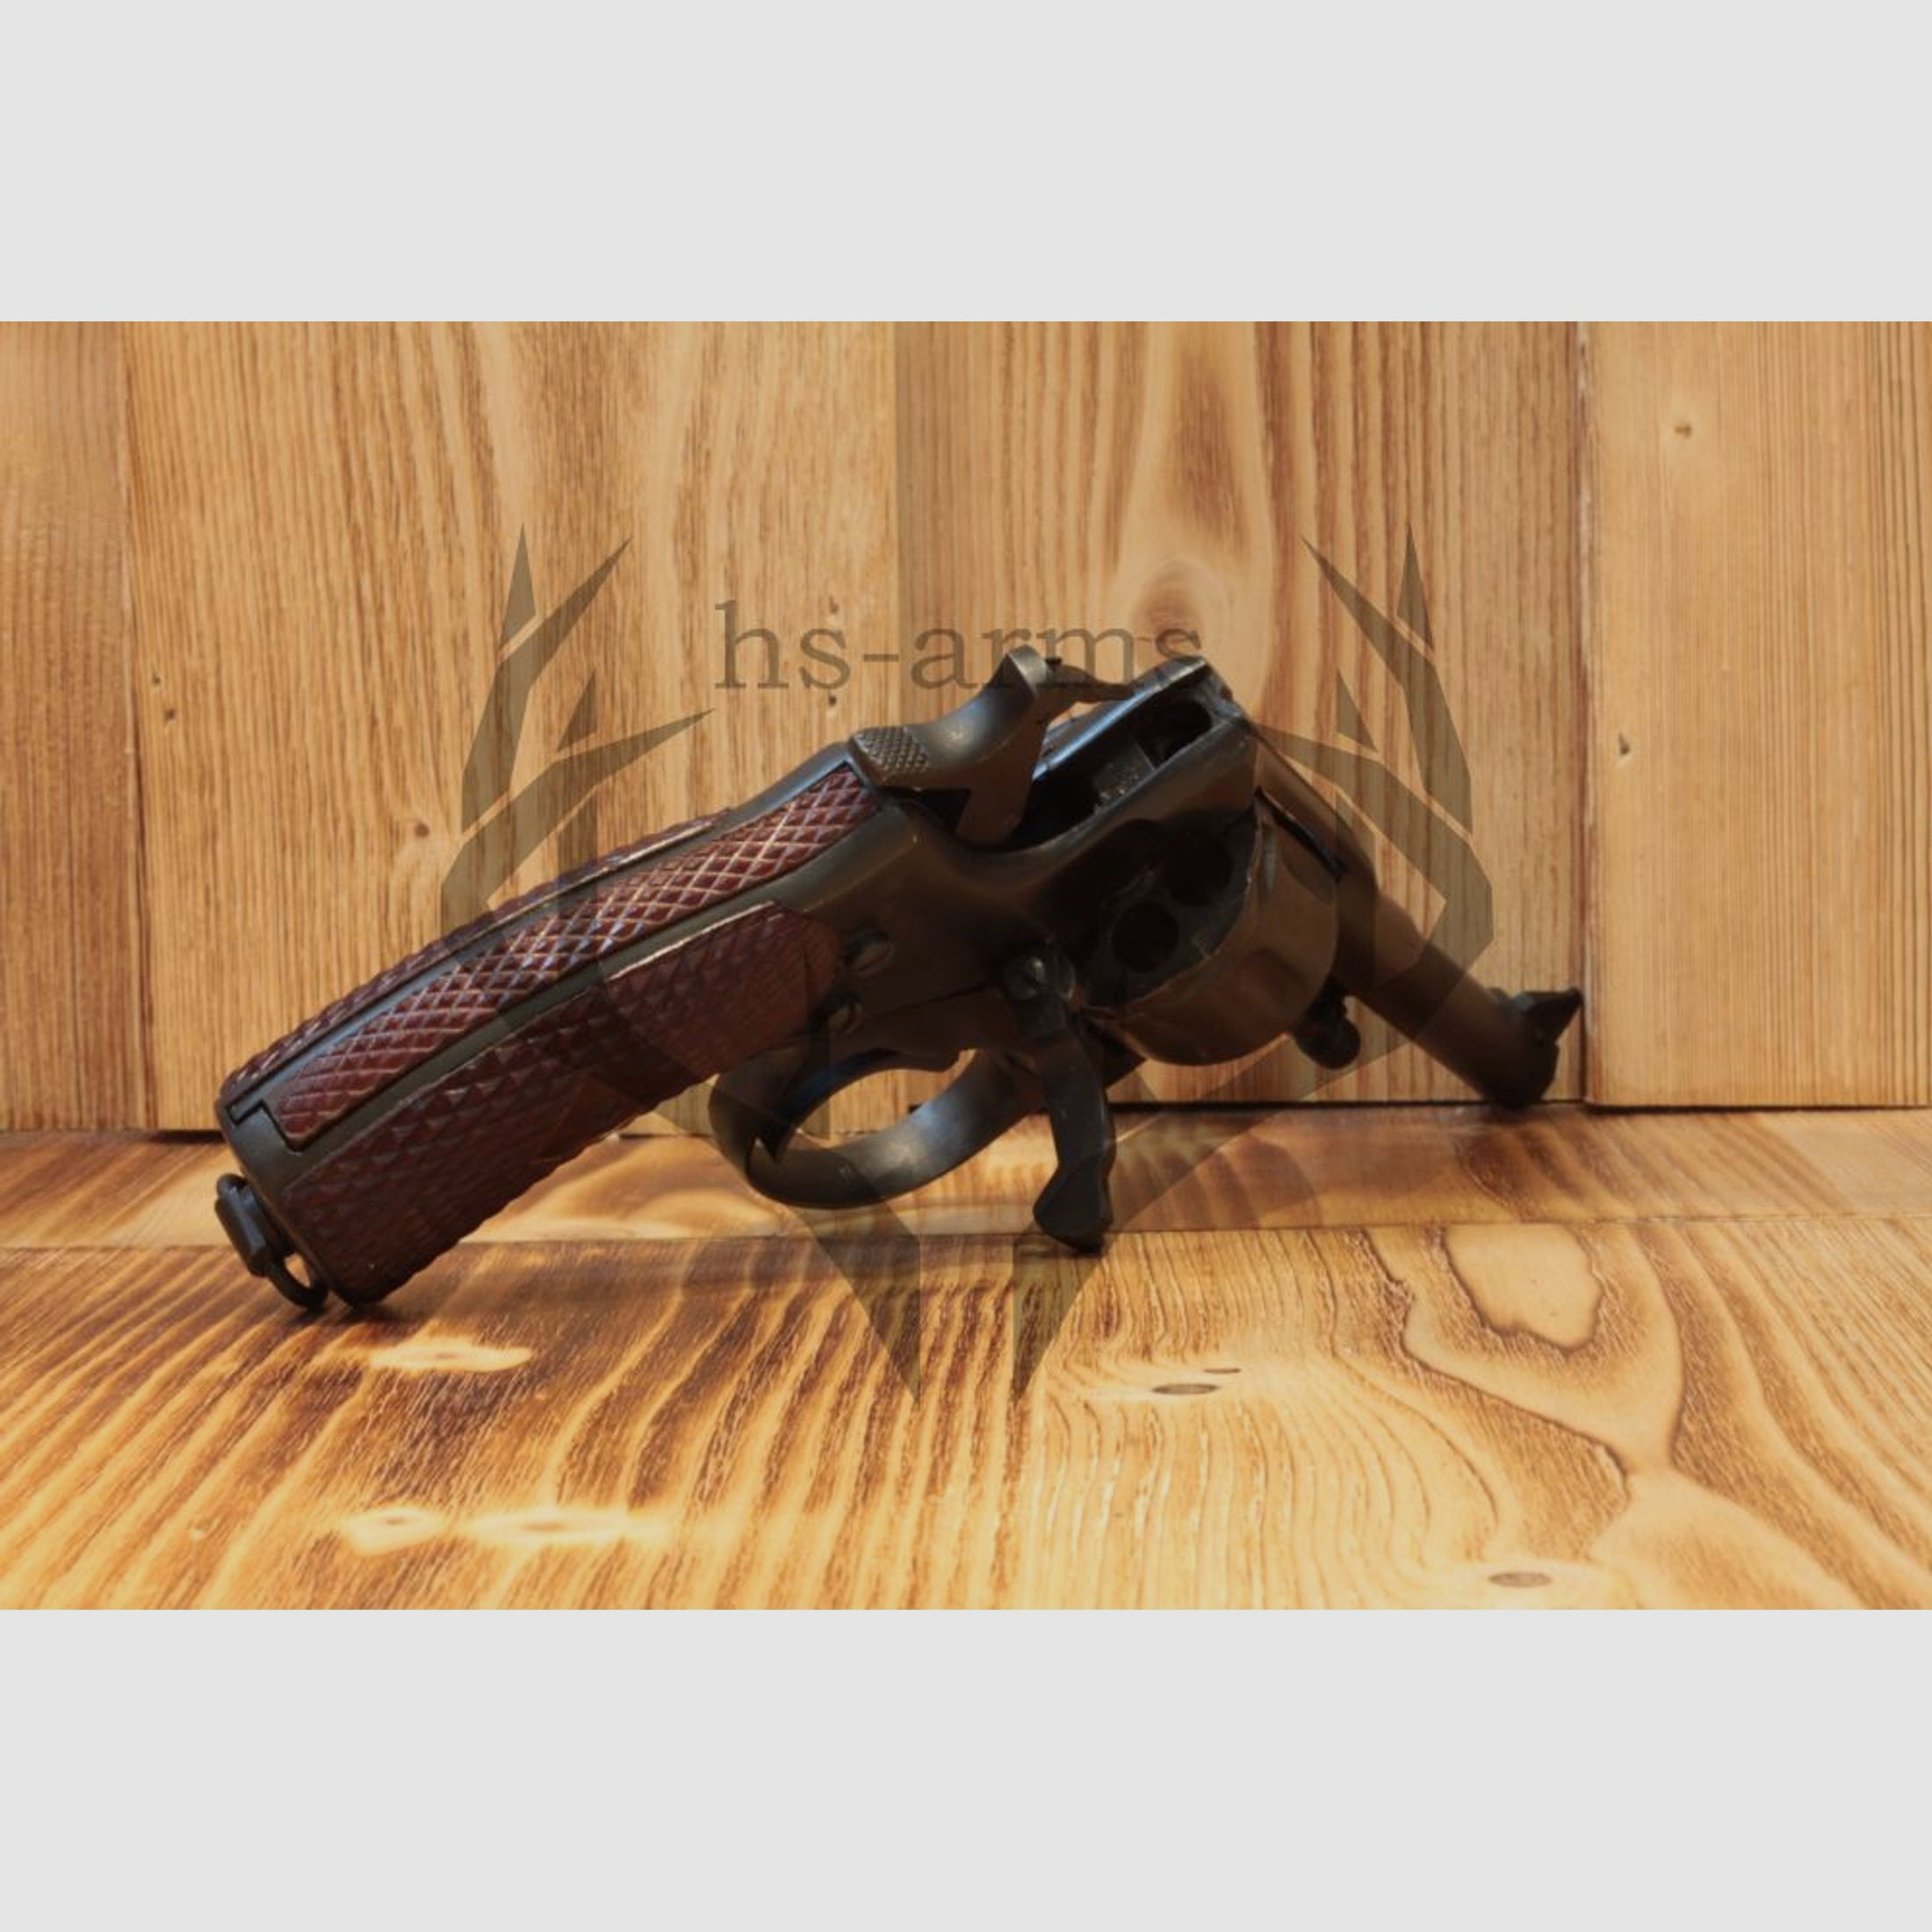 Nagant	 Nagant M1895 Revolver - 7,62 × 38 mm R